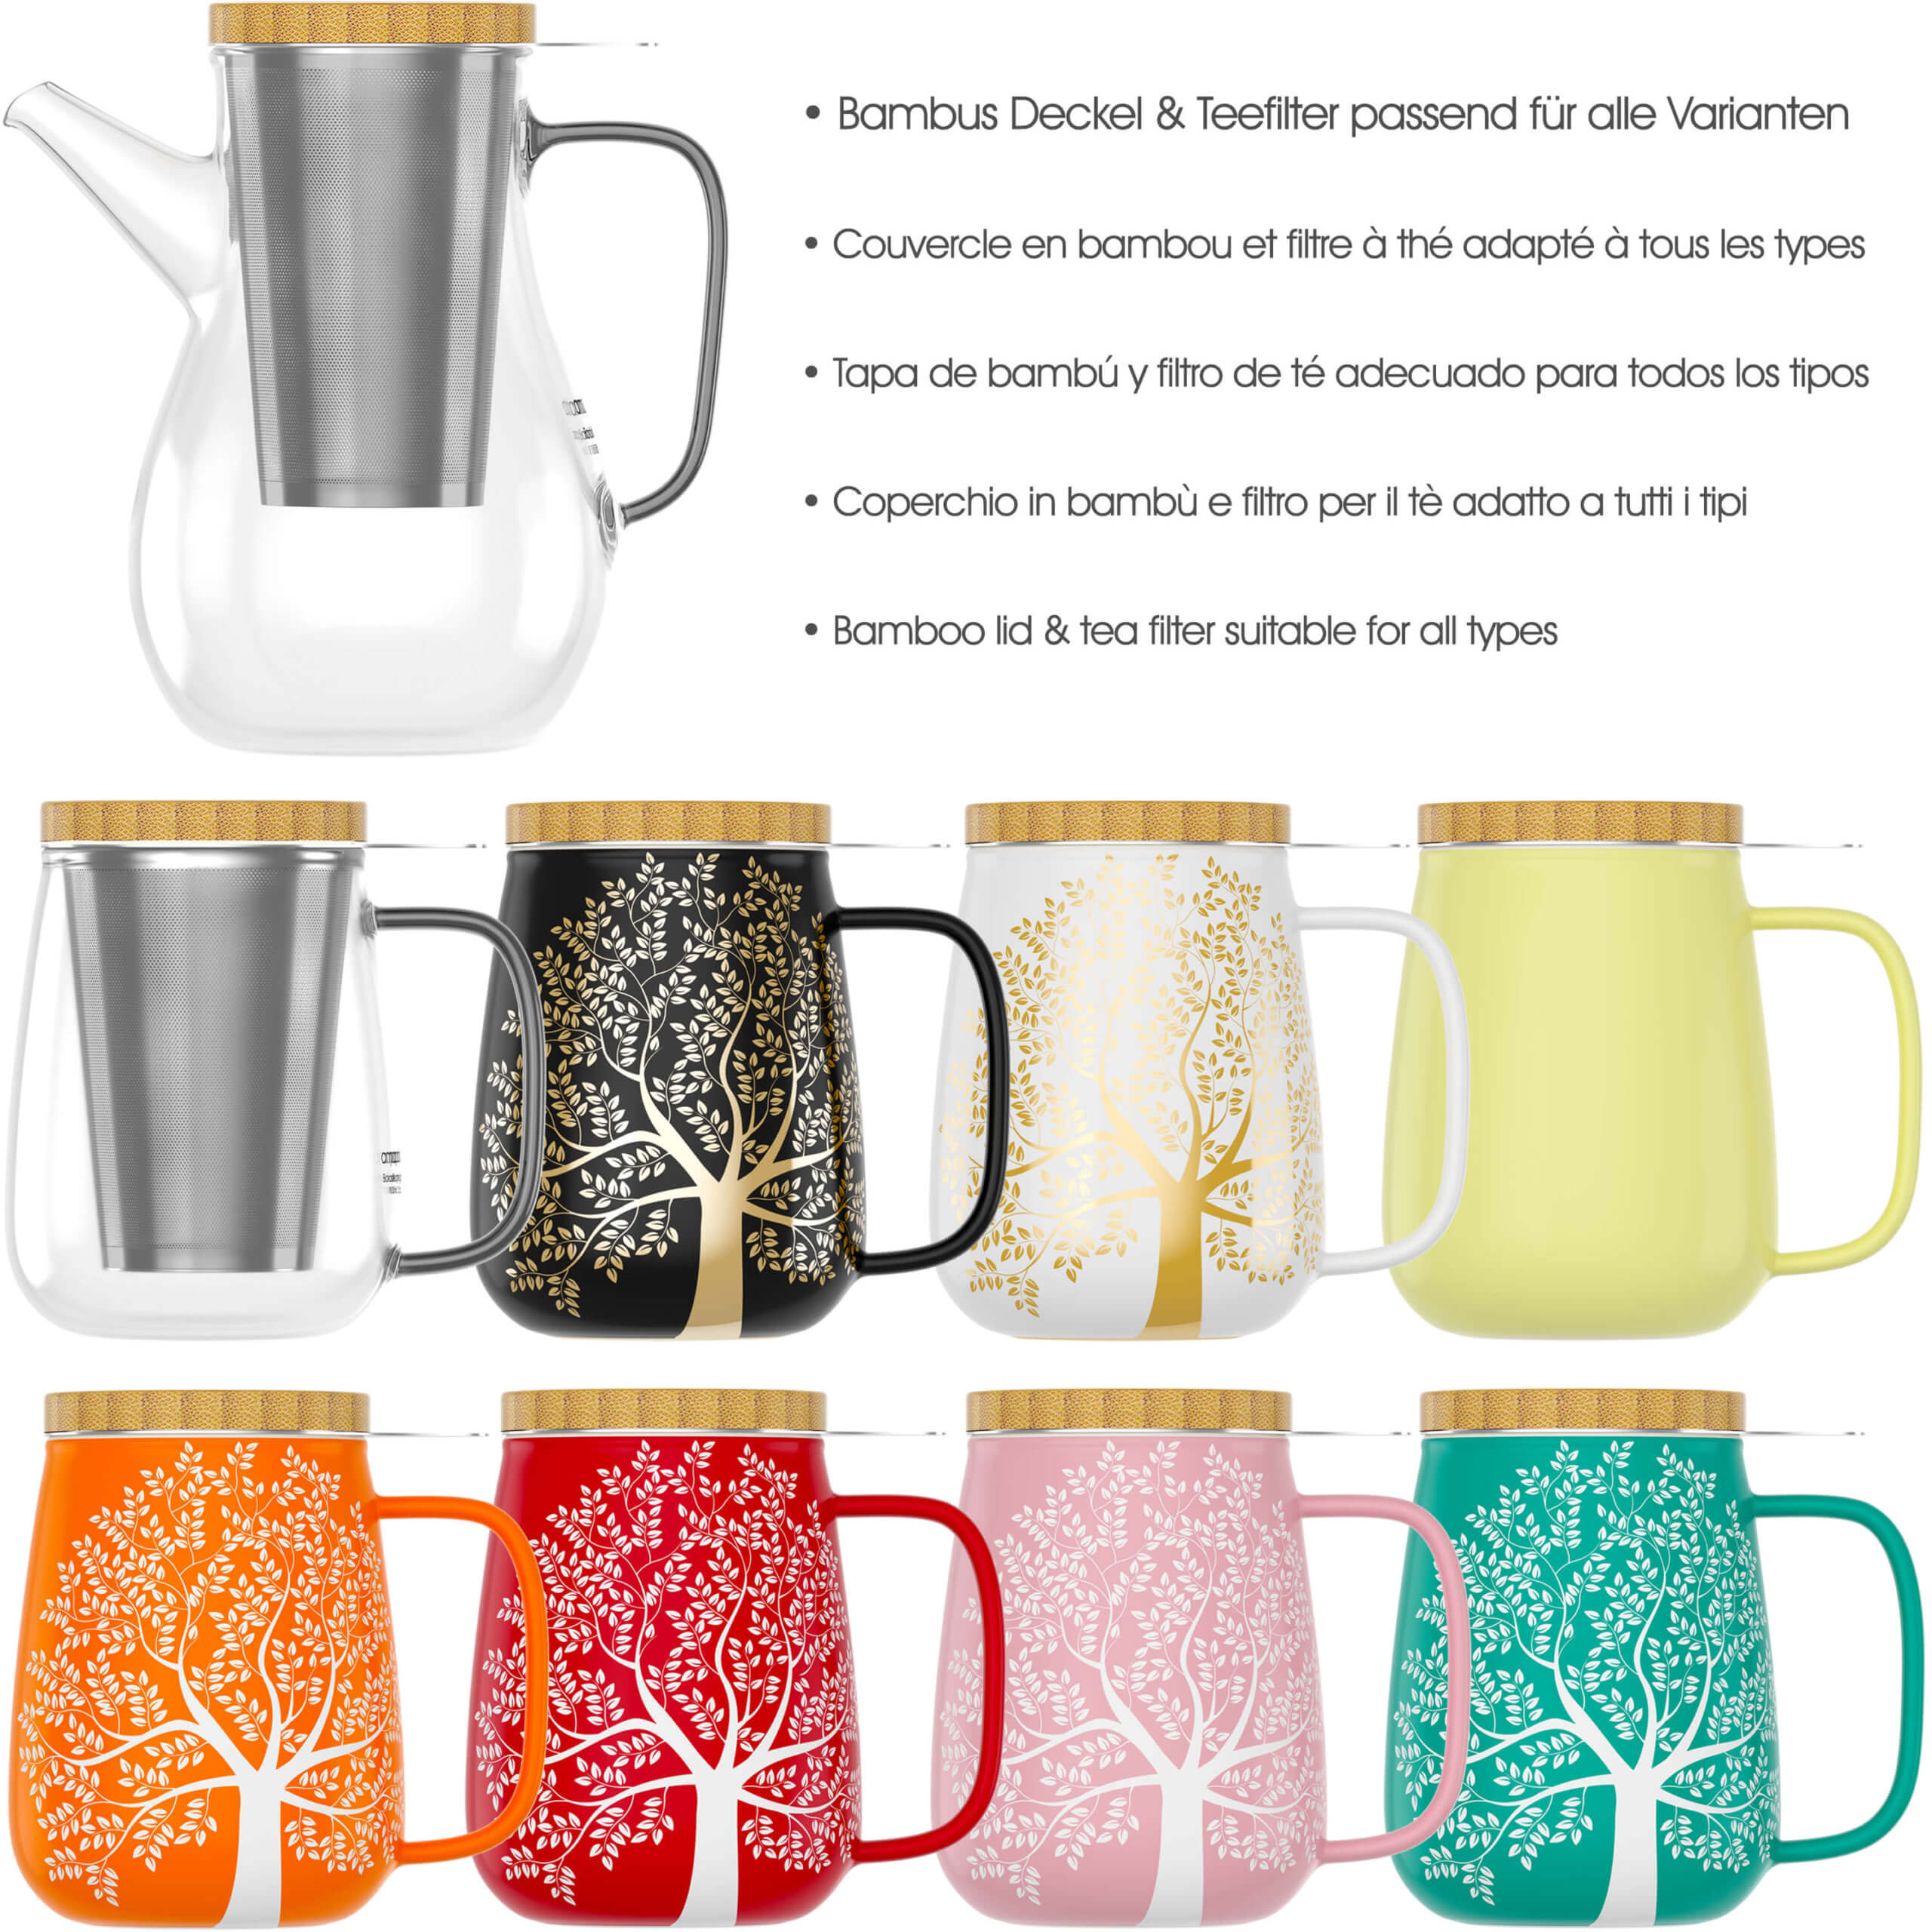 XXL Tasse Porzellan Set für losen Tee 650 ml orange amapodo Teetasse mit Deckel und Sieb Geschenk